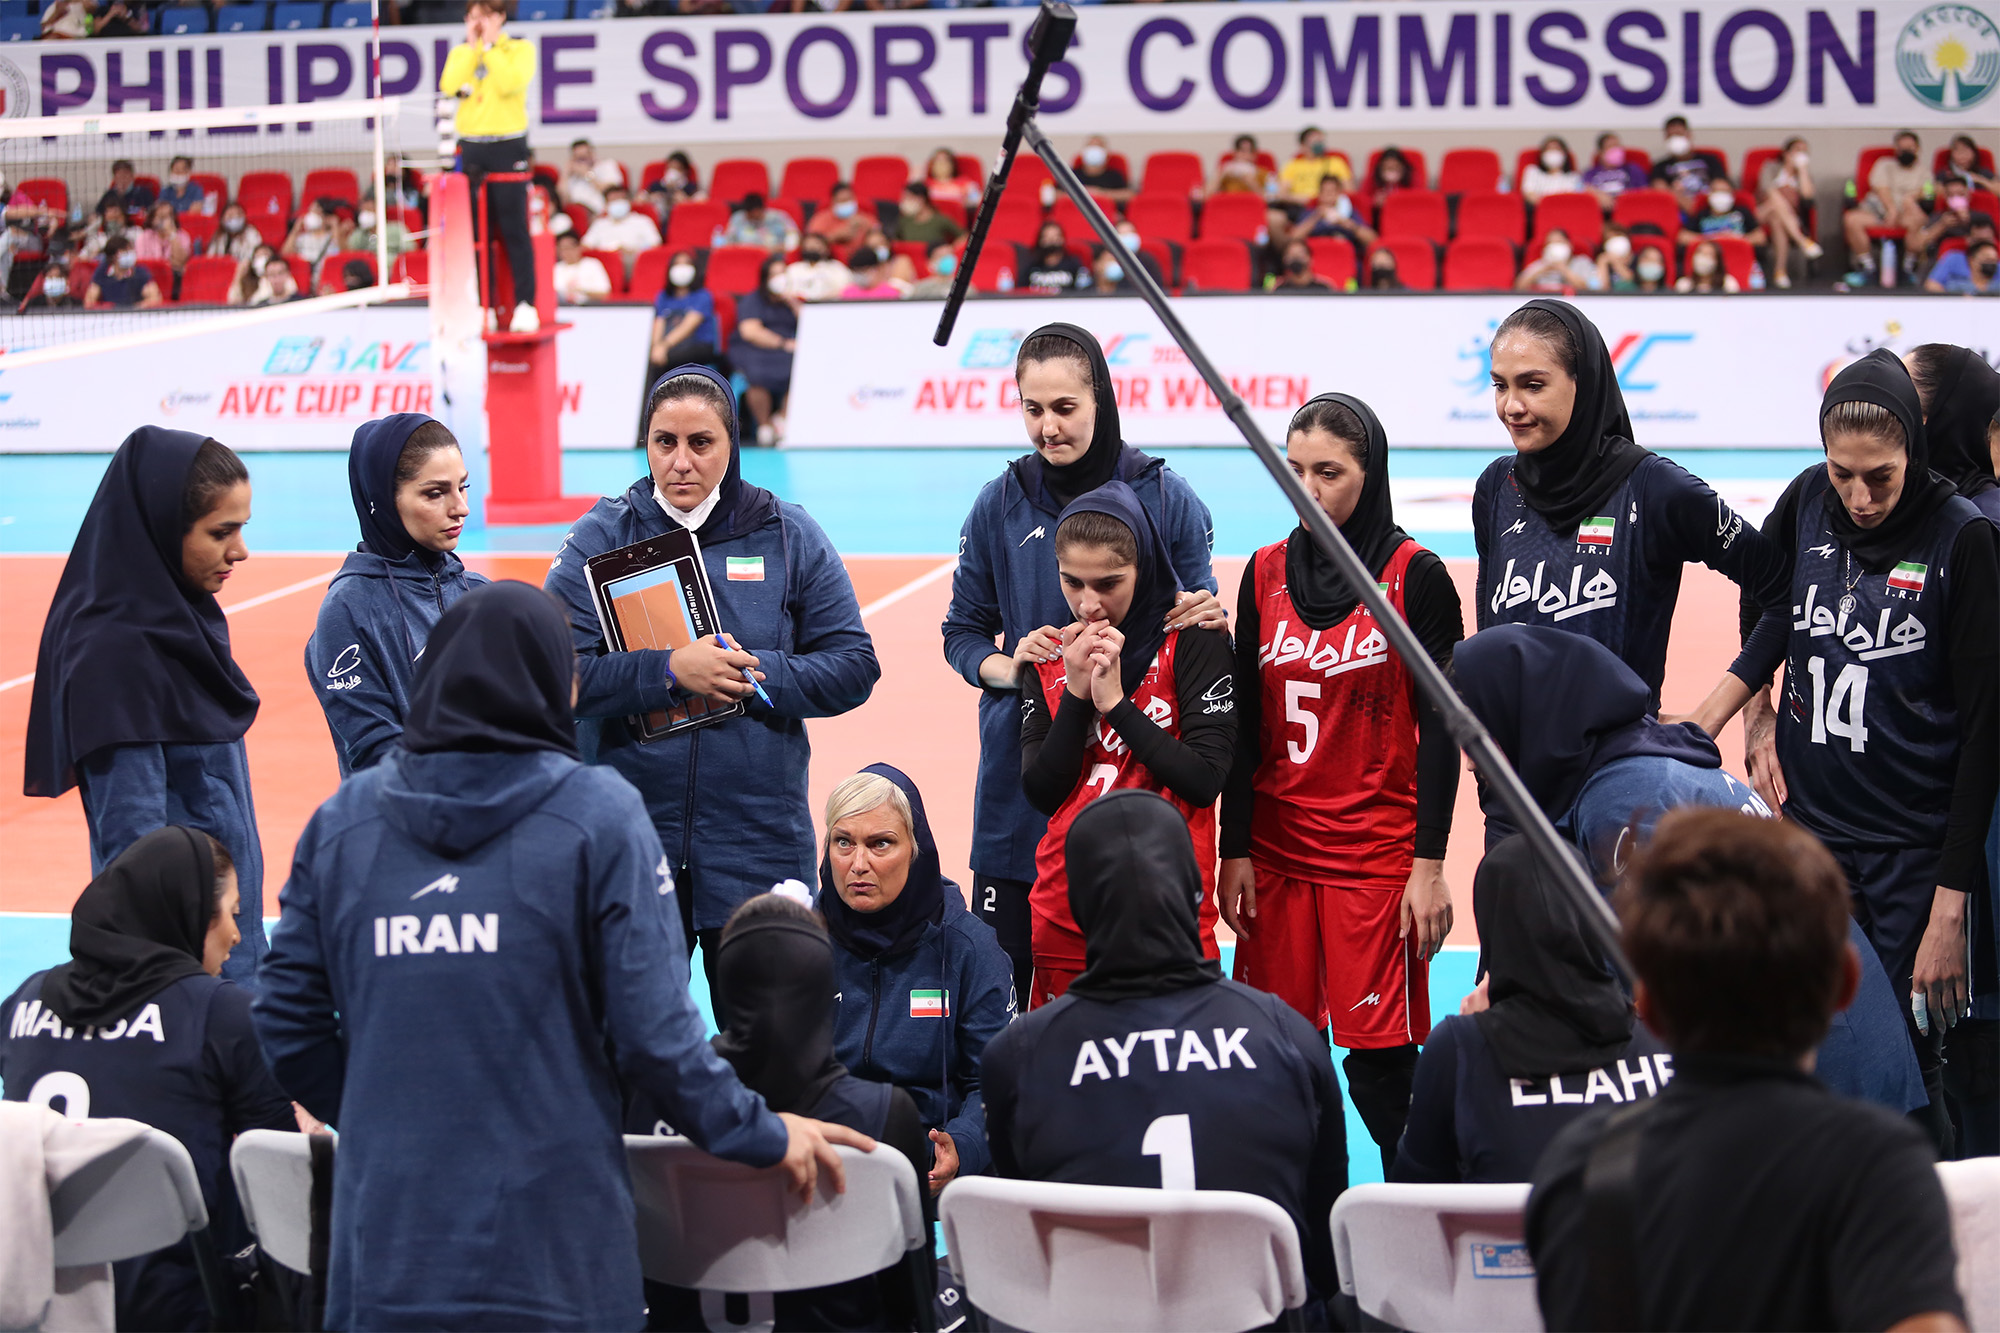 واليبال جام کنفدراسیون زنان آسیا، ایران یک ست از چین گرفت